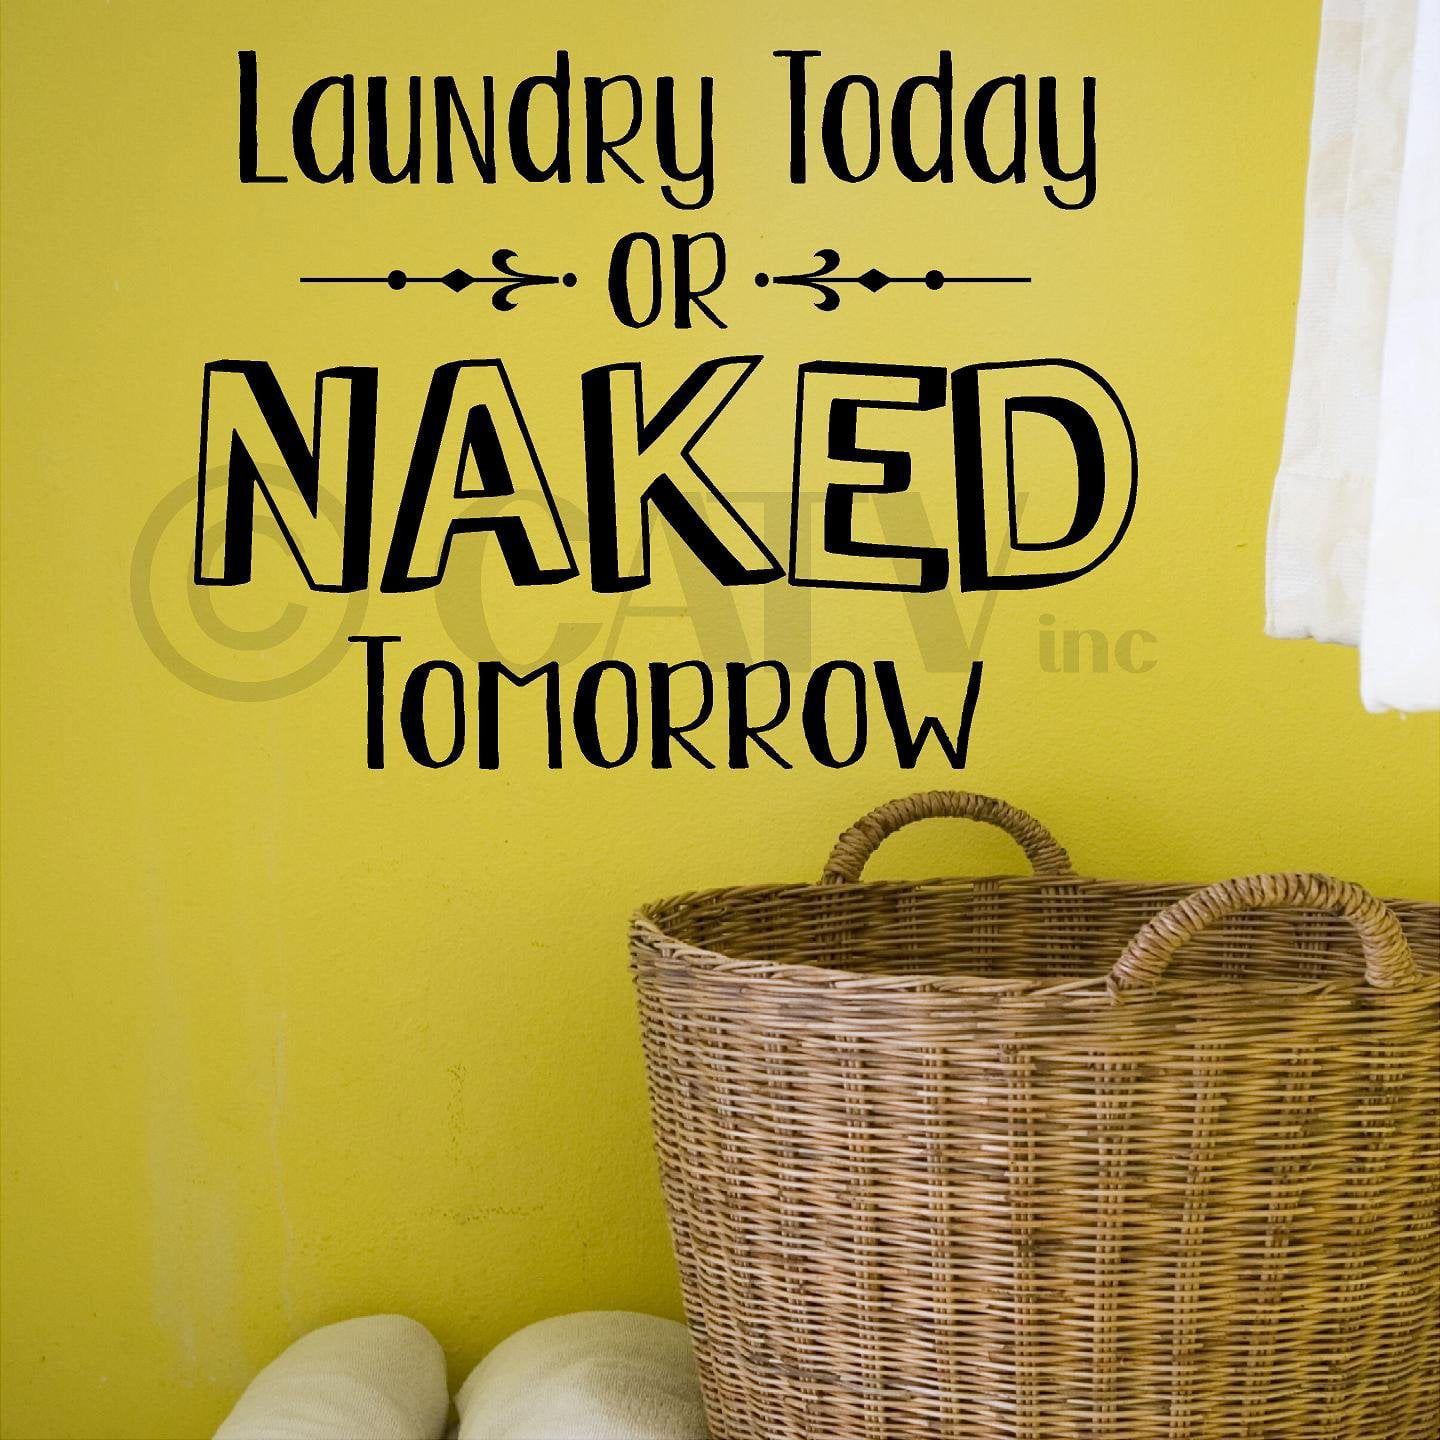 Amazon.com: Laundry Today Or Naked Tomorrow Vinyl Wall 